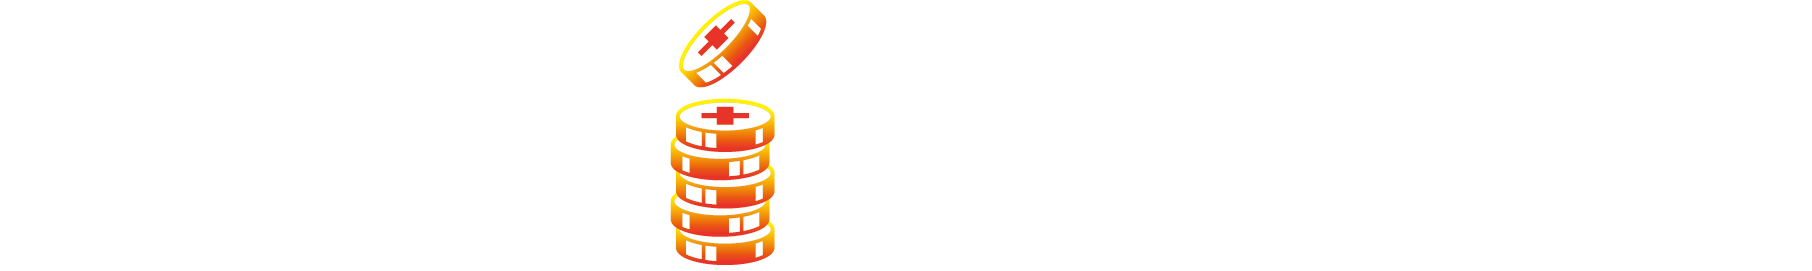 Winning Plus logo